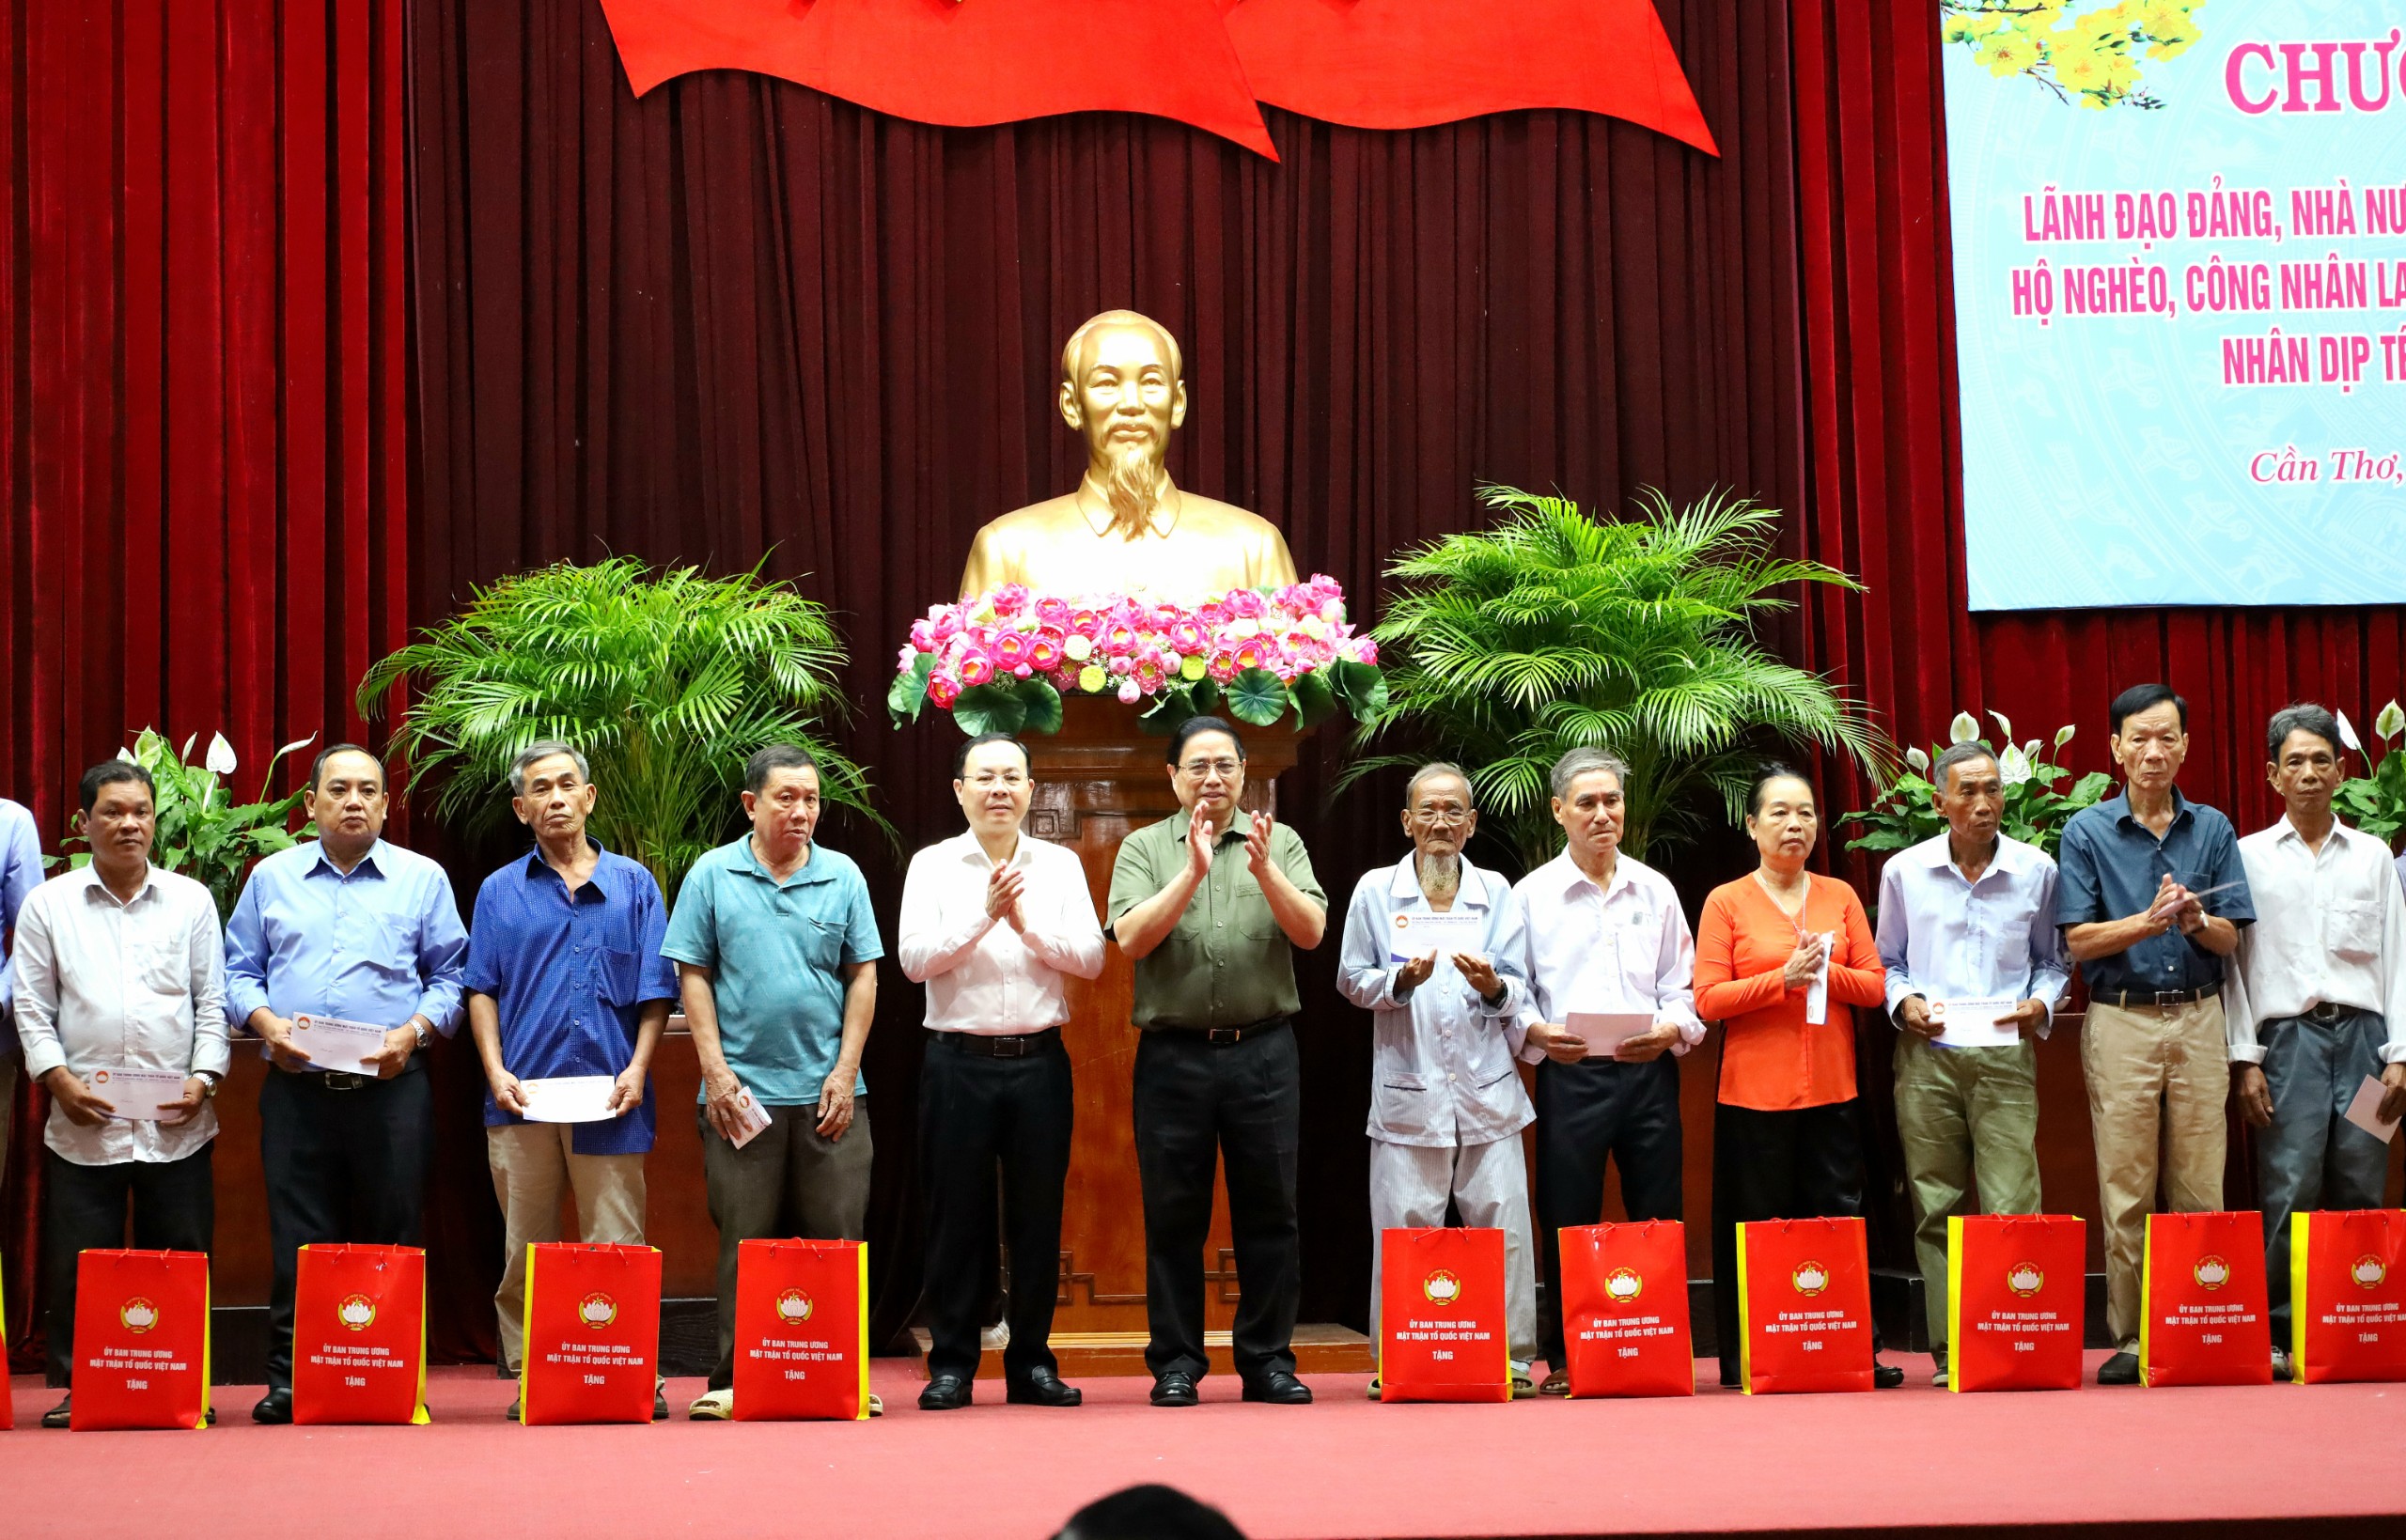 Thủ tướng Chính phủ Phạm Minh Chính và ông Nguyễn Văn Hiếu - Ủy viên dự khuyết BCH Trung ương Đảng, Bí thư Thành ủy Cần Thơ tặng quà cho người dân.